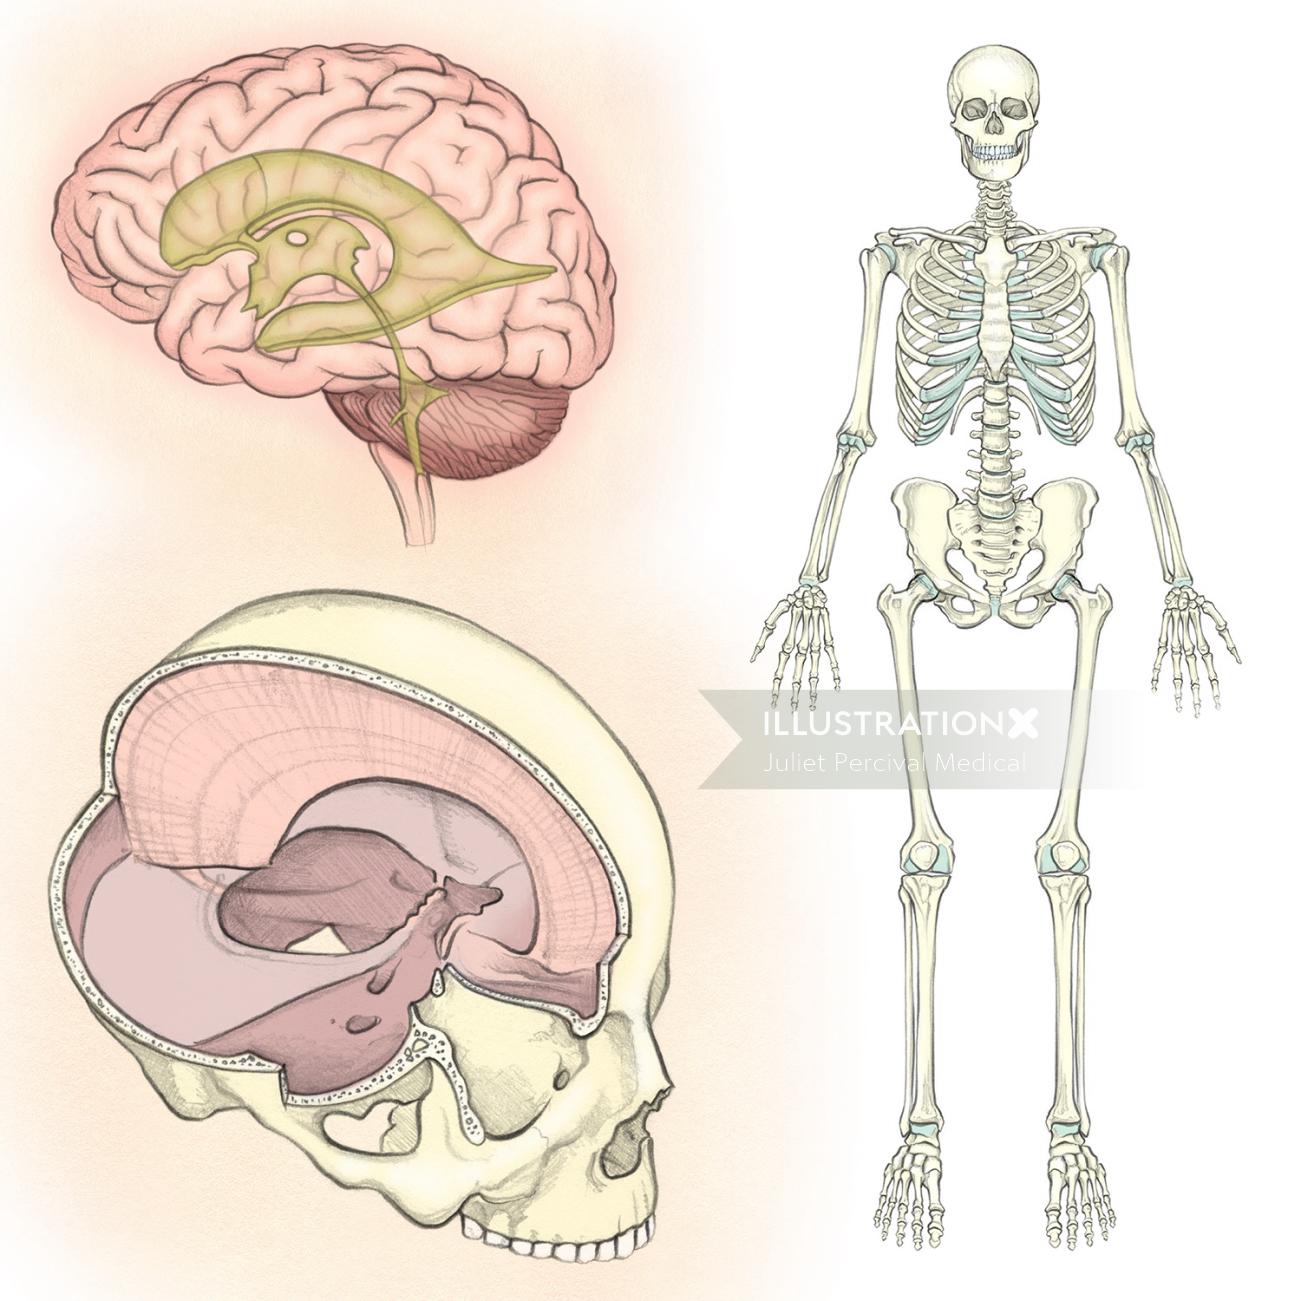 解剖学、骨格、頭蓋骨、脳室